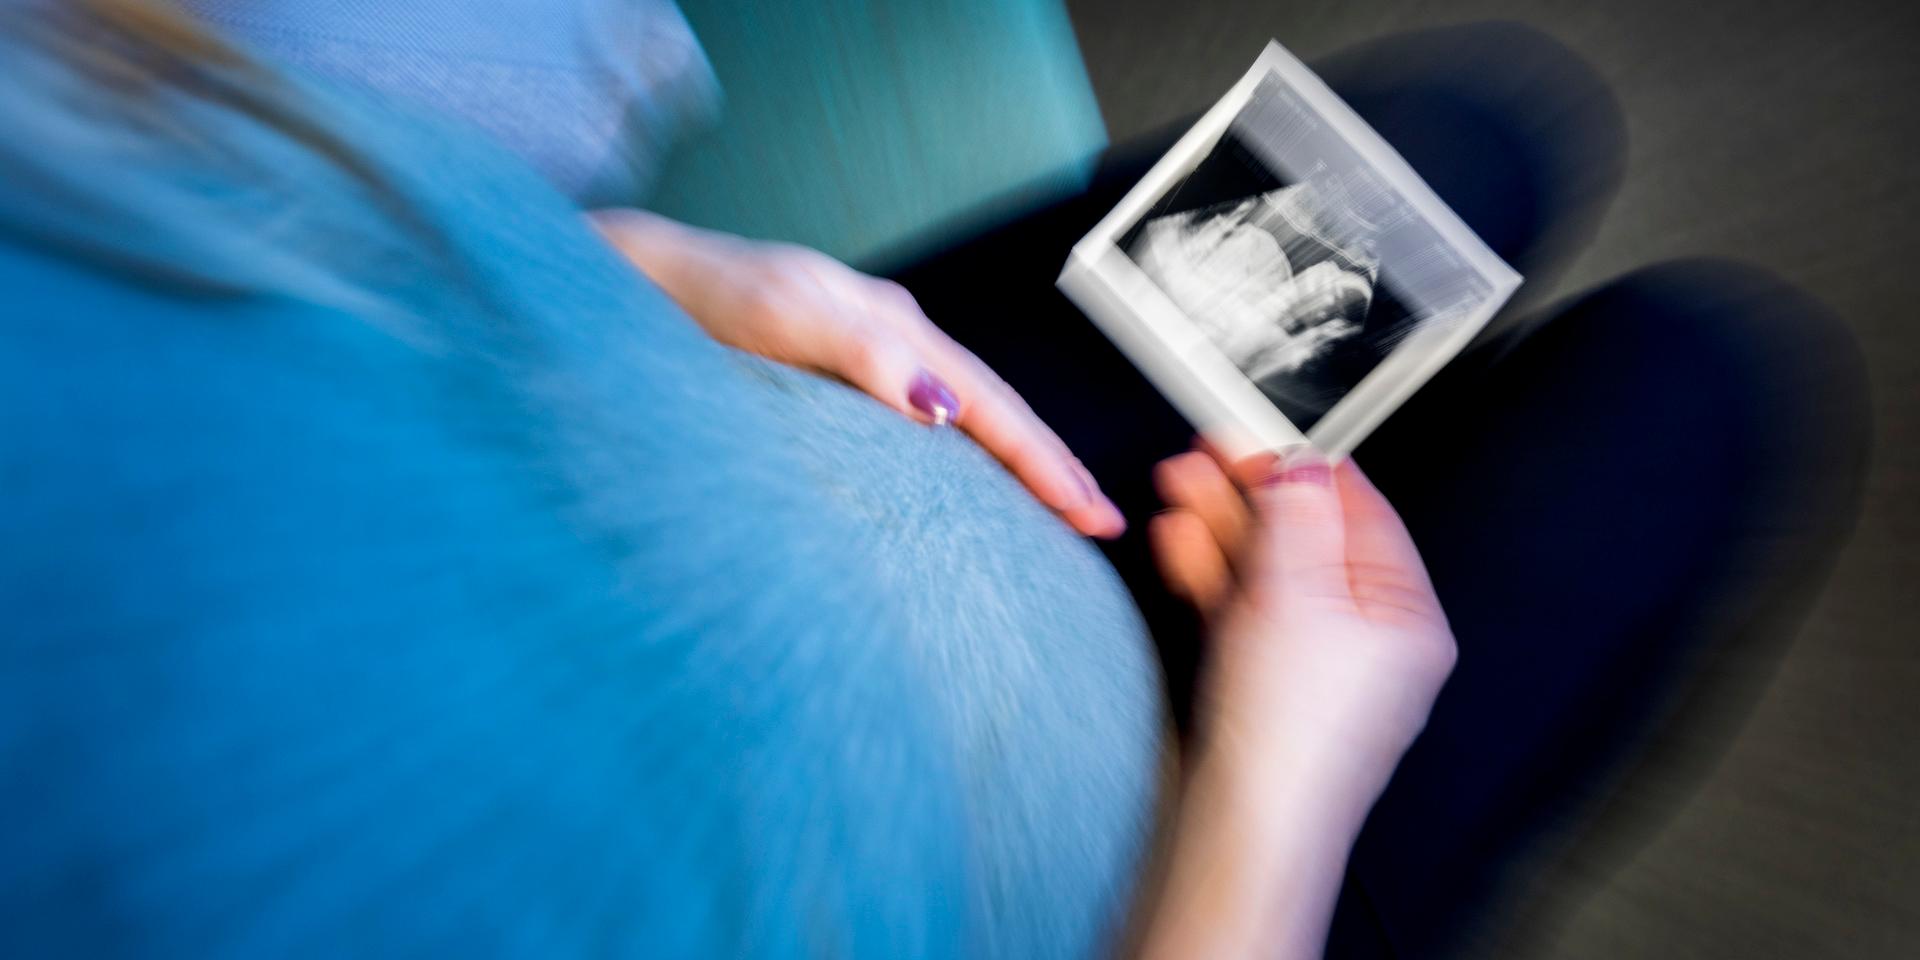 Varje graviditet har föregåtts av en helt medveten handling där både mannen och kvinnan är helt på det klara med riskerna, skriver insändarskribenten.